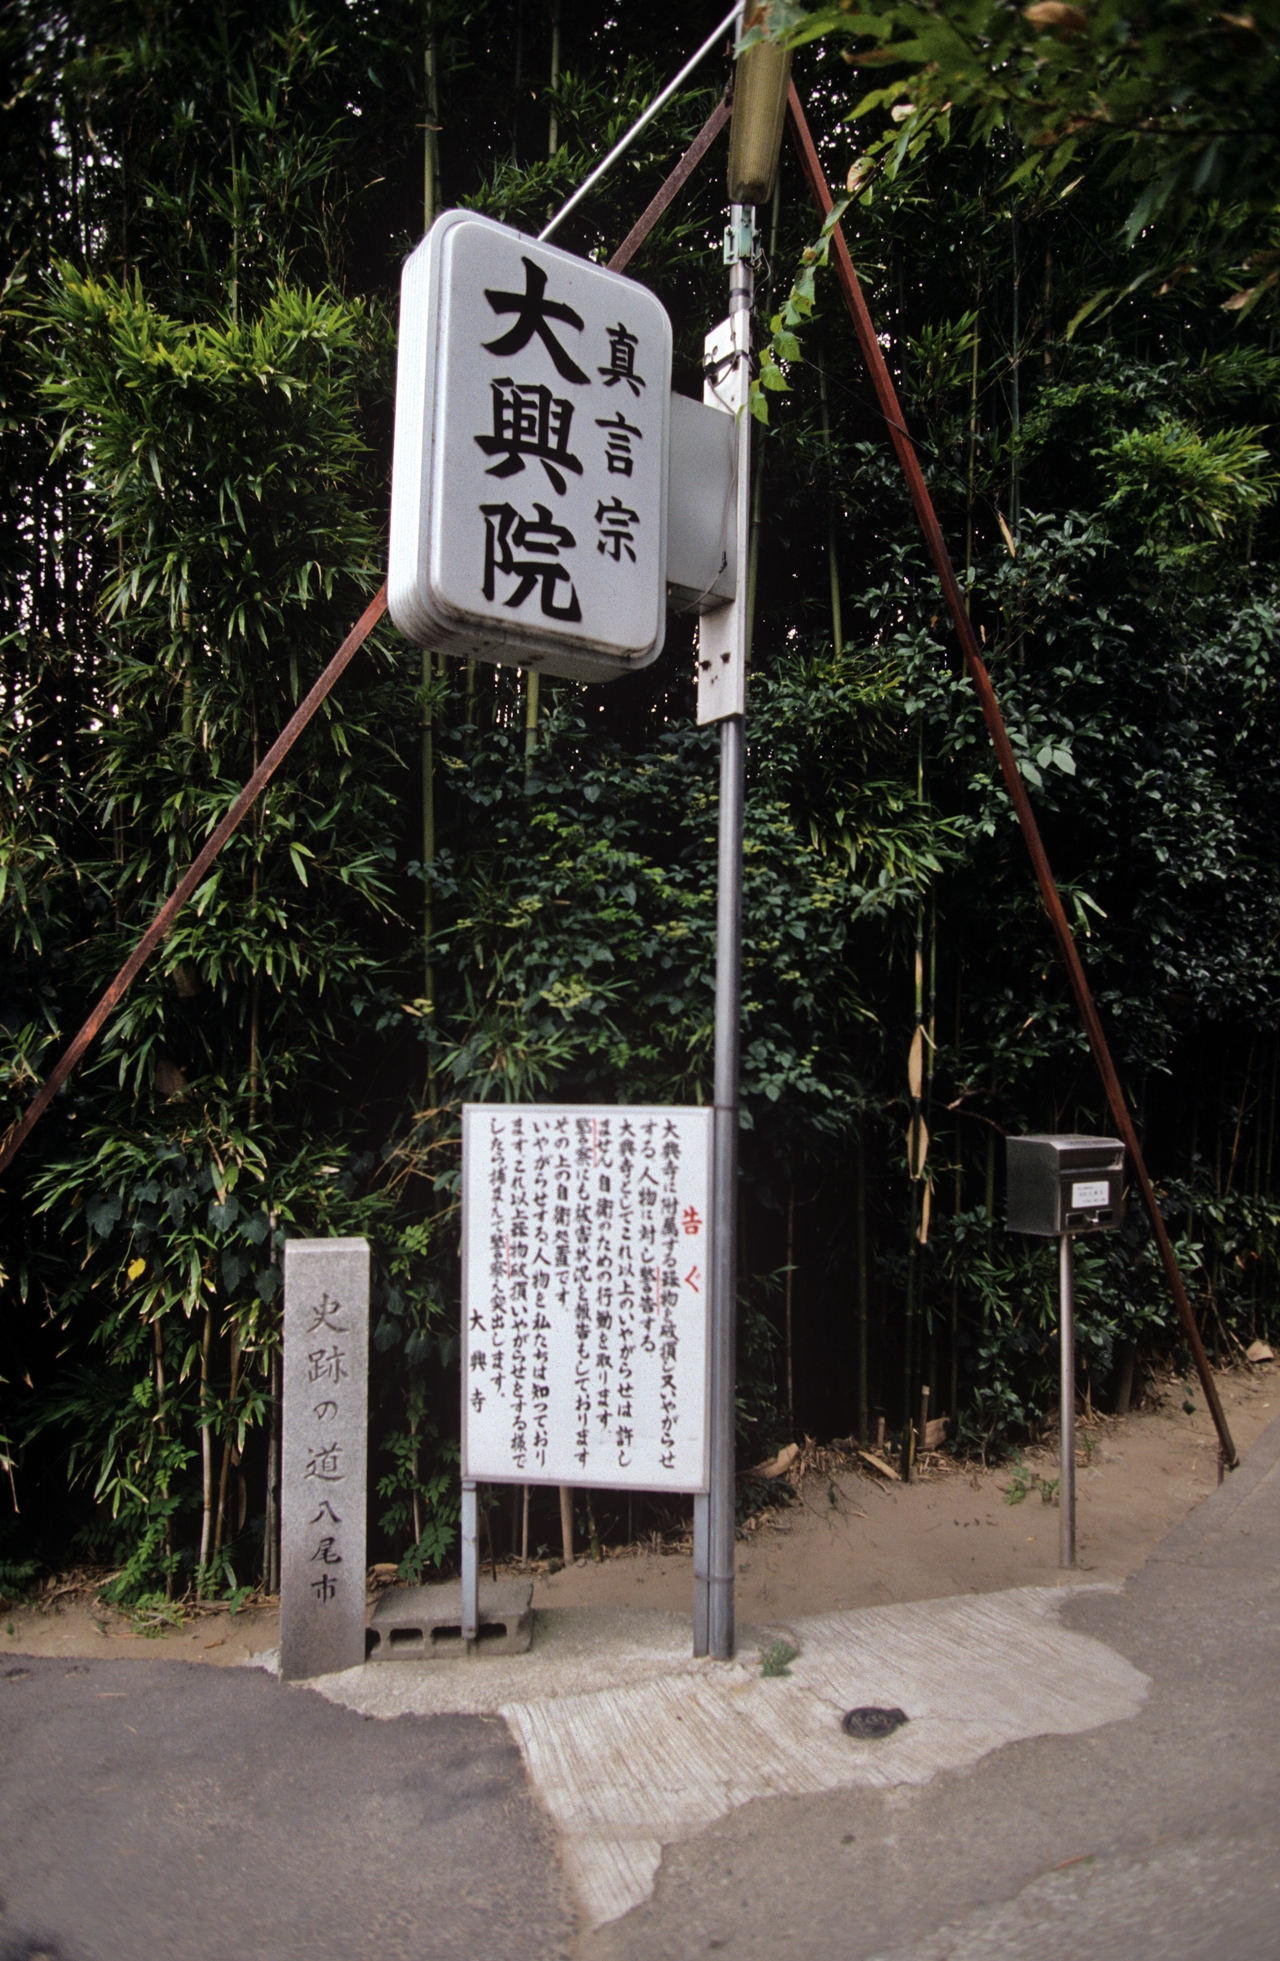 김만보 심방은 일본 오사카 인근에서 대흥사(大興寺)라는 굿당을 운영하기도 했다. 일본 카가와(香天) 현 미토요시(三豊市)에 소재하고 있다. 다쿠미 촬영 사진 / 사진=국립민속박물관